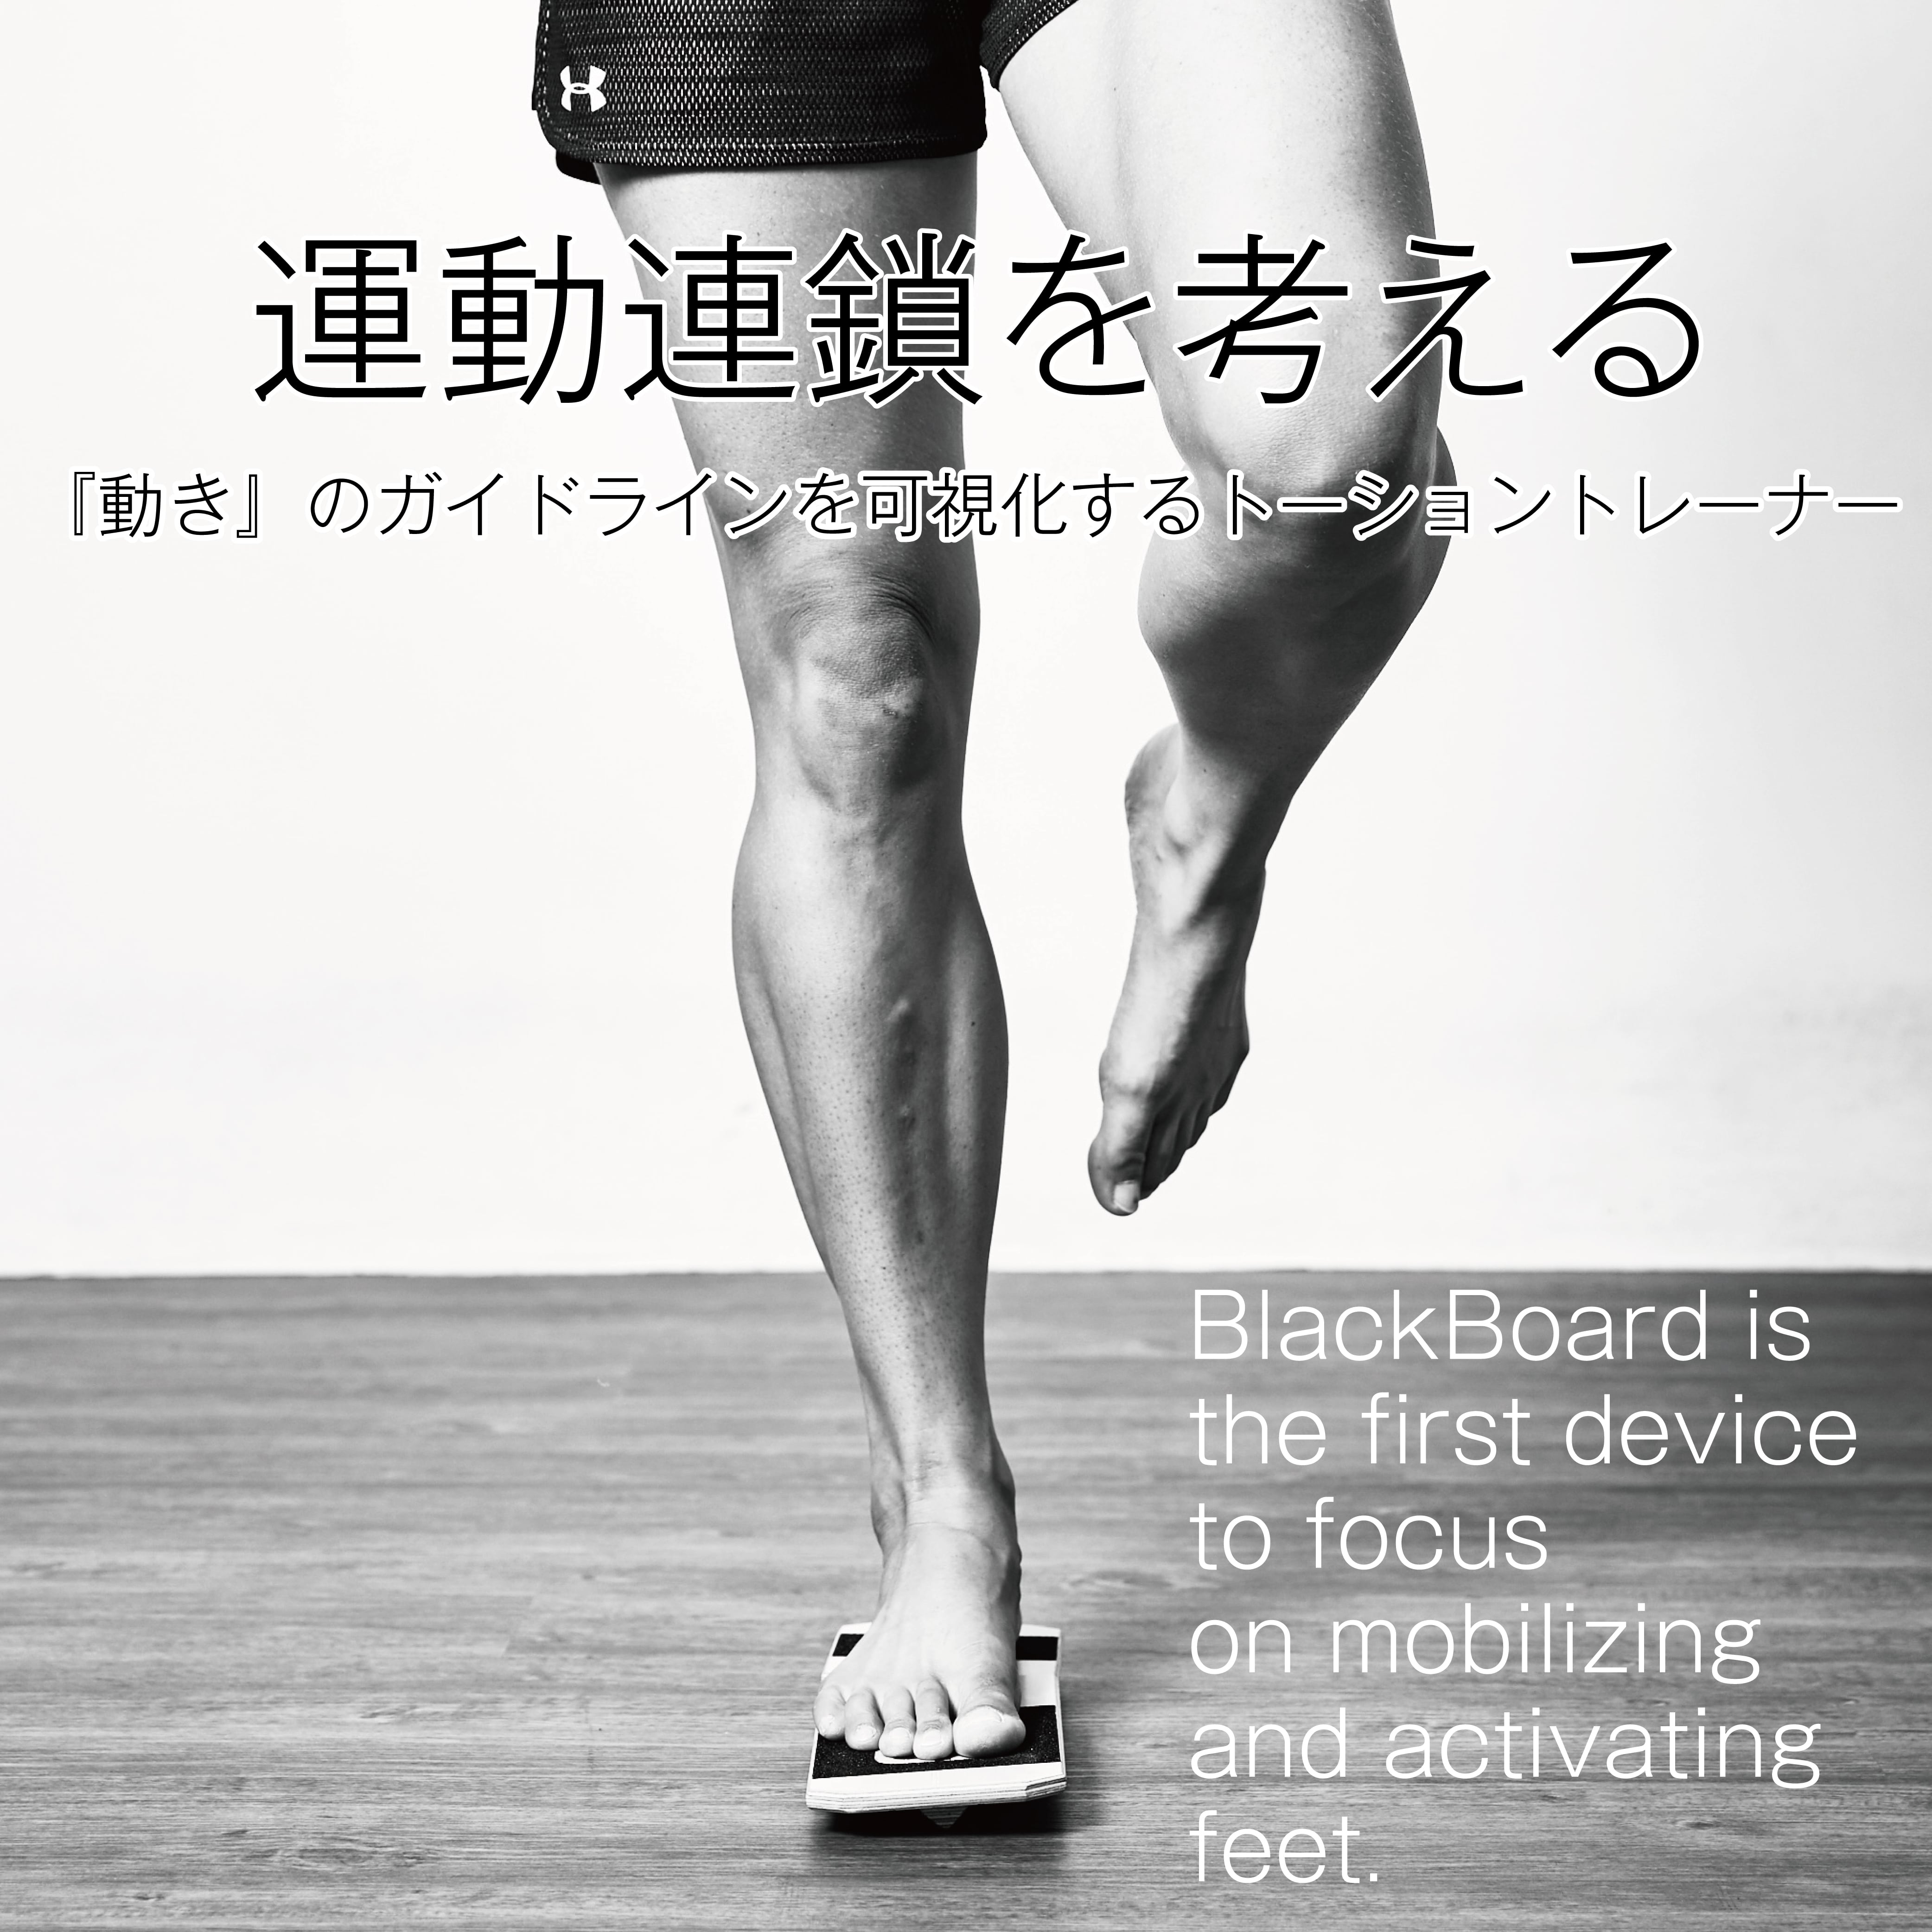 BlackBoard　Joint　CONDITIONING　Basic　movement　training-足部・足関節・運動連鎖の調整改善ツール　move-|コンディショニングラボ　LABO-better　/ブラックボード・トレーニングシステム(Blackboard　Training　and　System)-Foot　ベタームーヴ